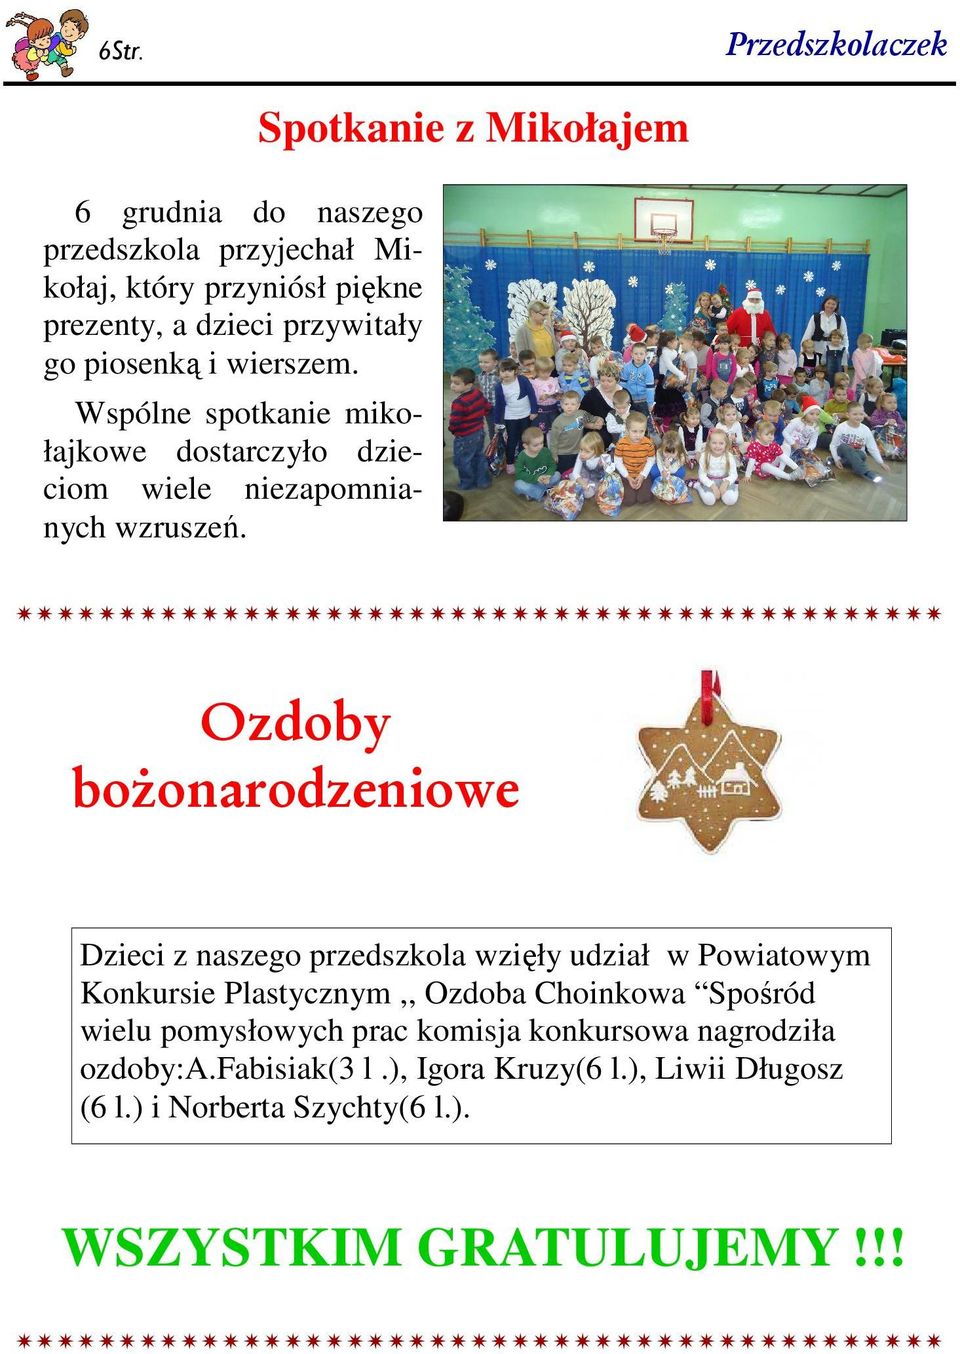 Spotkanie z Mikołajem Ozdoby bożonarodzeniowe Dzieci z naszego przedszkola wzięły udział w Powiatowym Konkursie Plastycznym,, Ozdoba